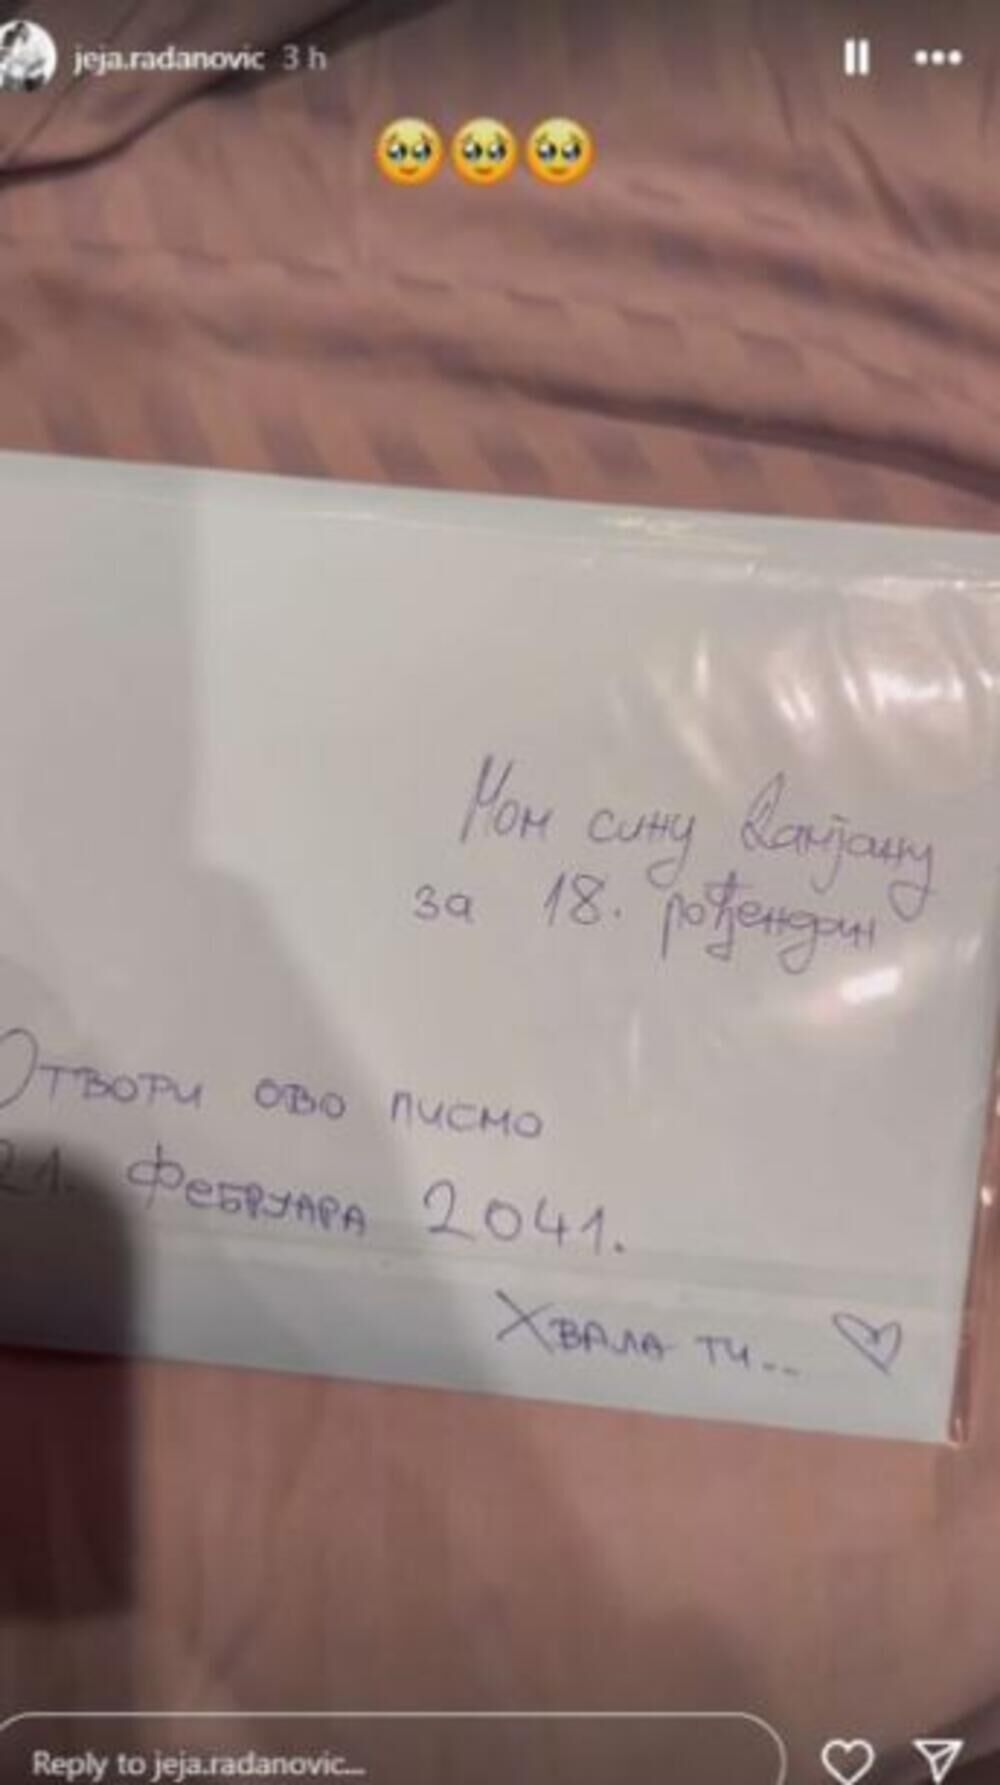 Sloba sinu na 1. rođendan ostavio kovertu koju će da dobije tek kada bude punio 18 godina